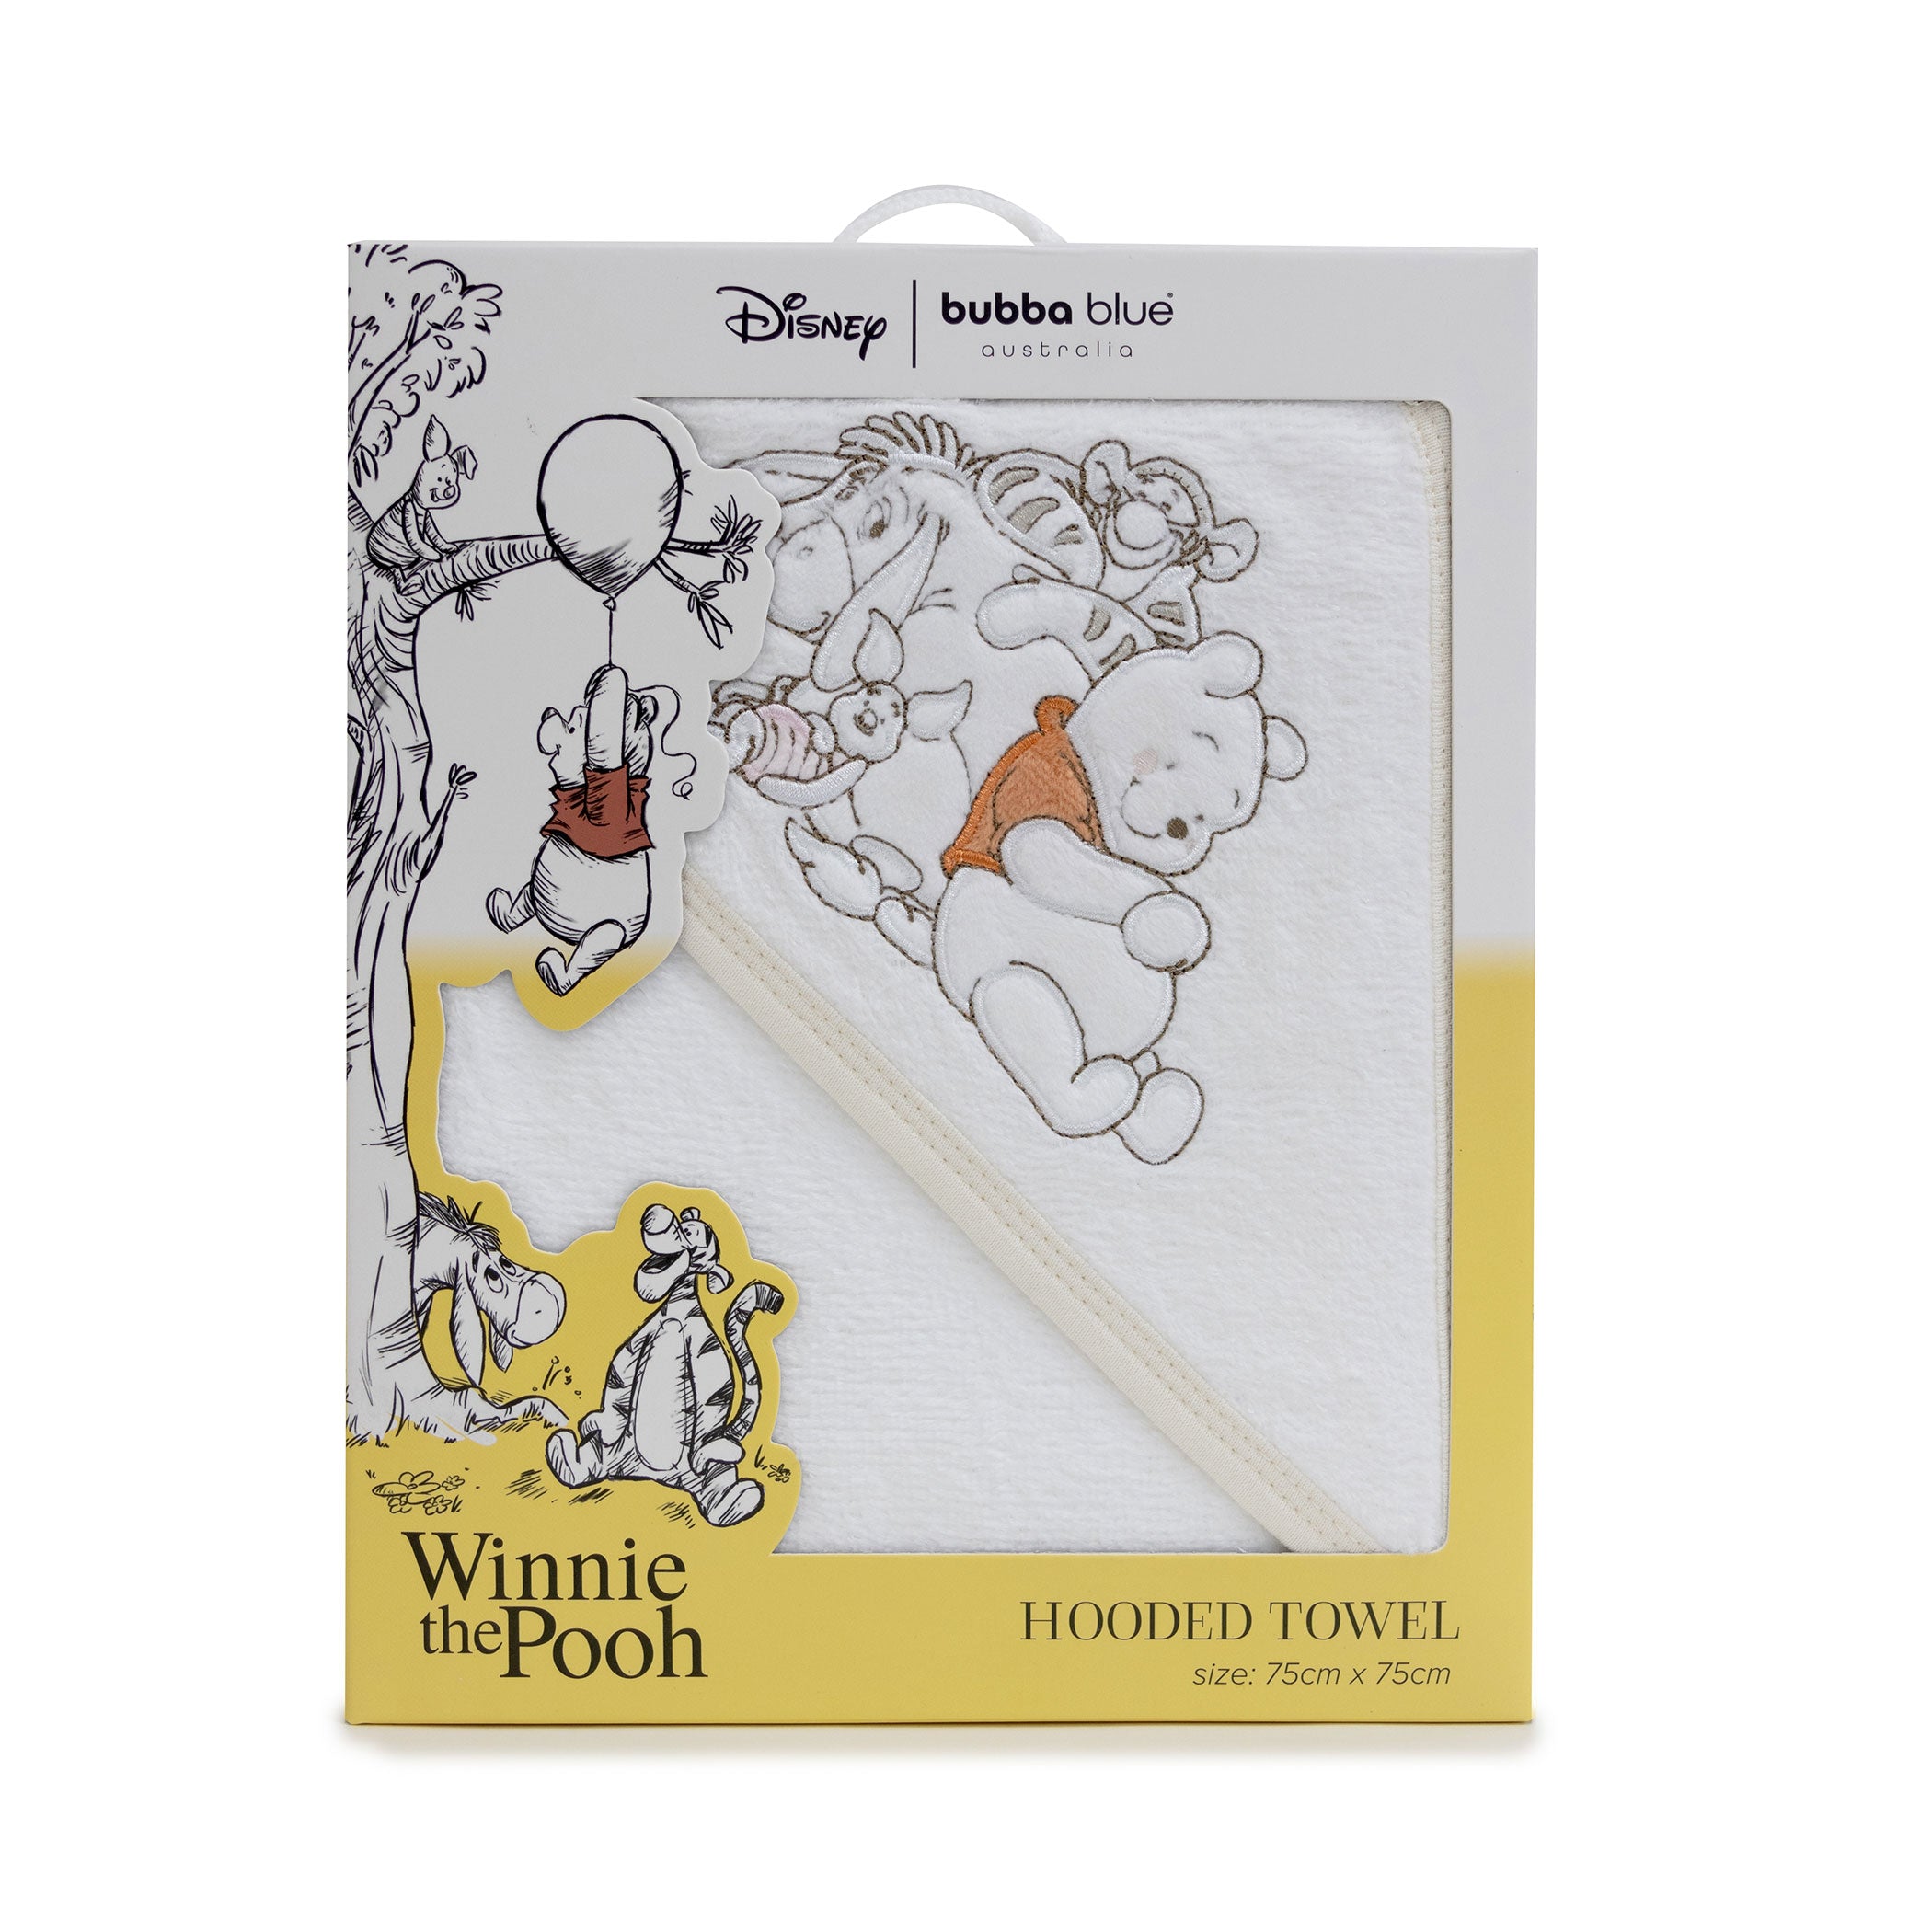 Disney Winnie the Pooh Hooded Towel